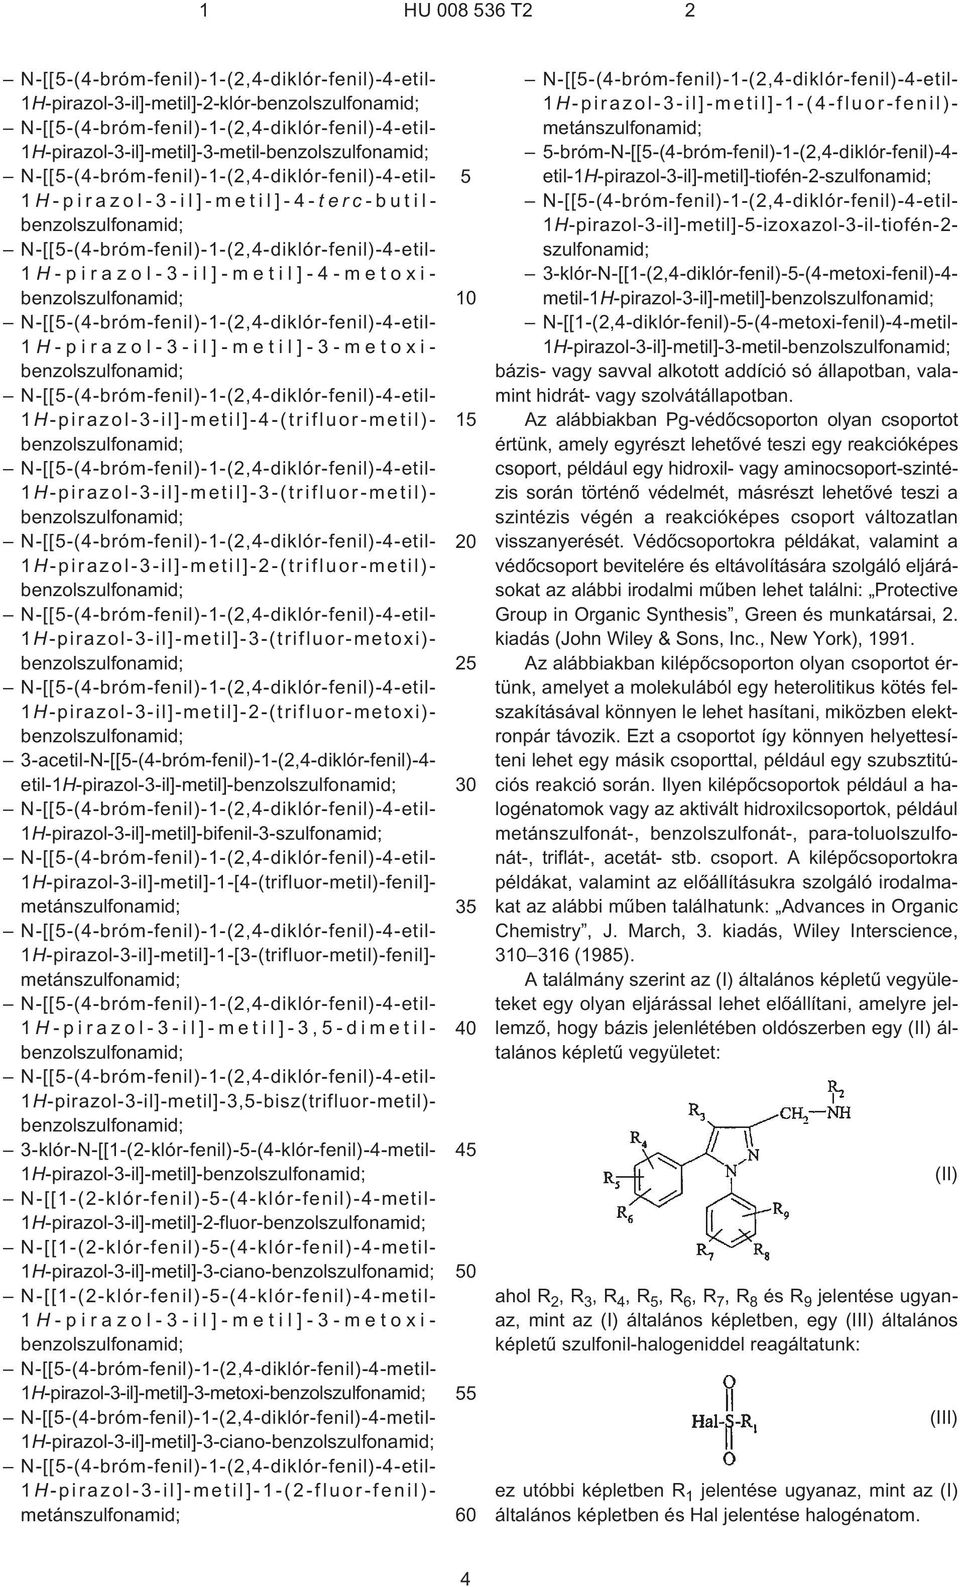 1H¹pirazol-3¹il]-metil]-2-(trifluor-metoxi)- 3¹acetil-N-[[5¹(4¹bróm-fenil)-1¹(2,4-diklór-fenil)-4- etil-1h¹pirazol-3¹il]-metil]- 1H¹pirazol-3¹il]-metil]-bifenil-3-szulfonamid;